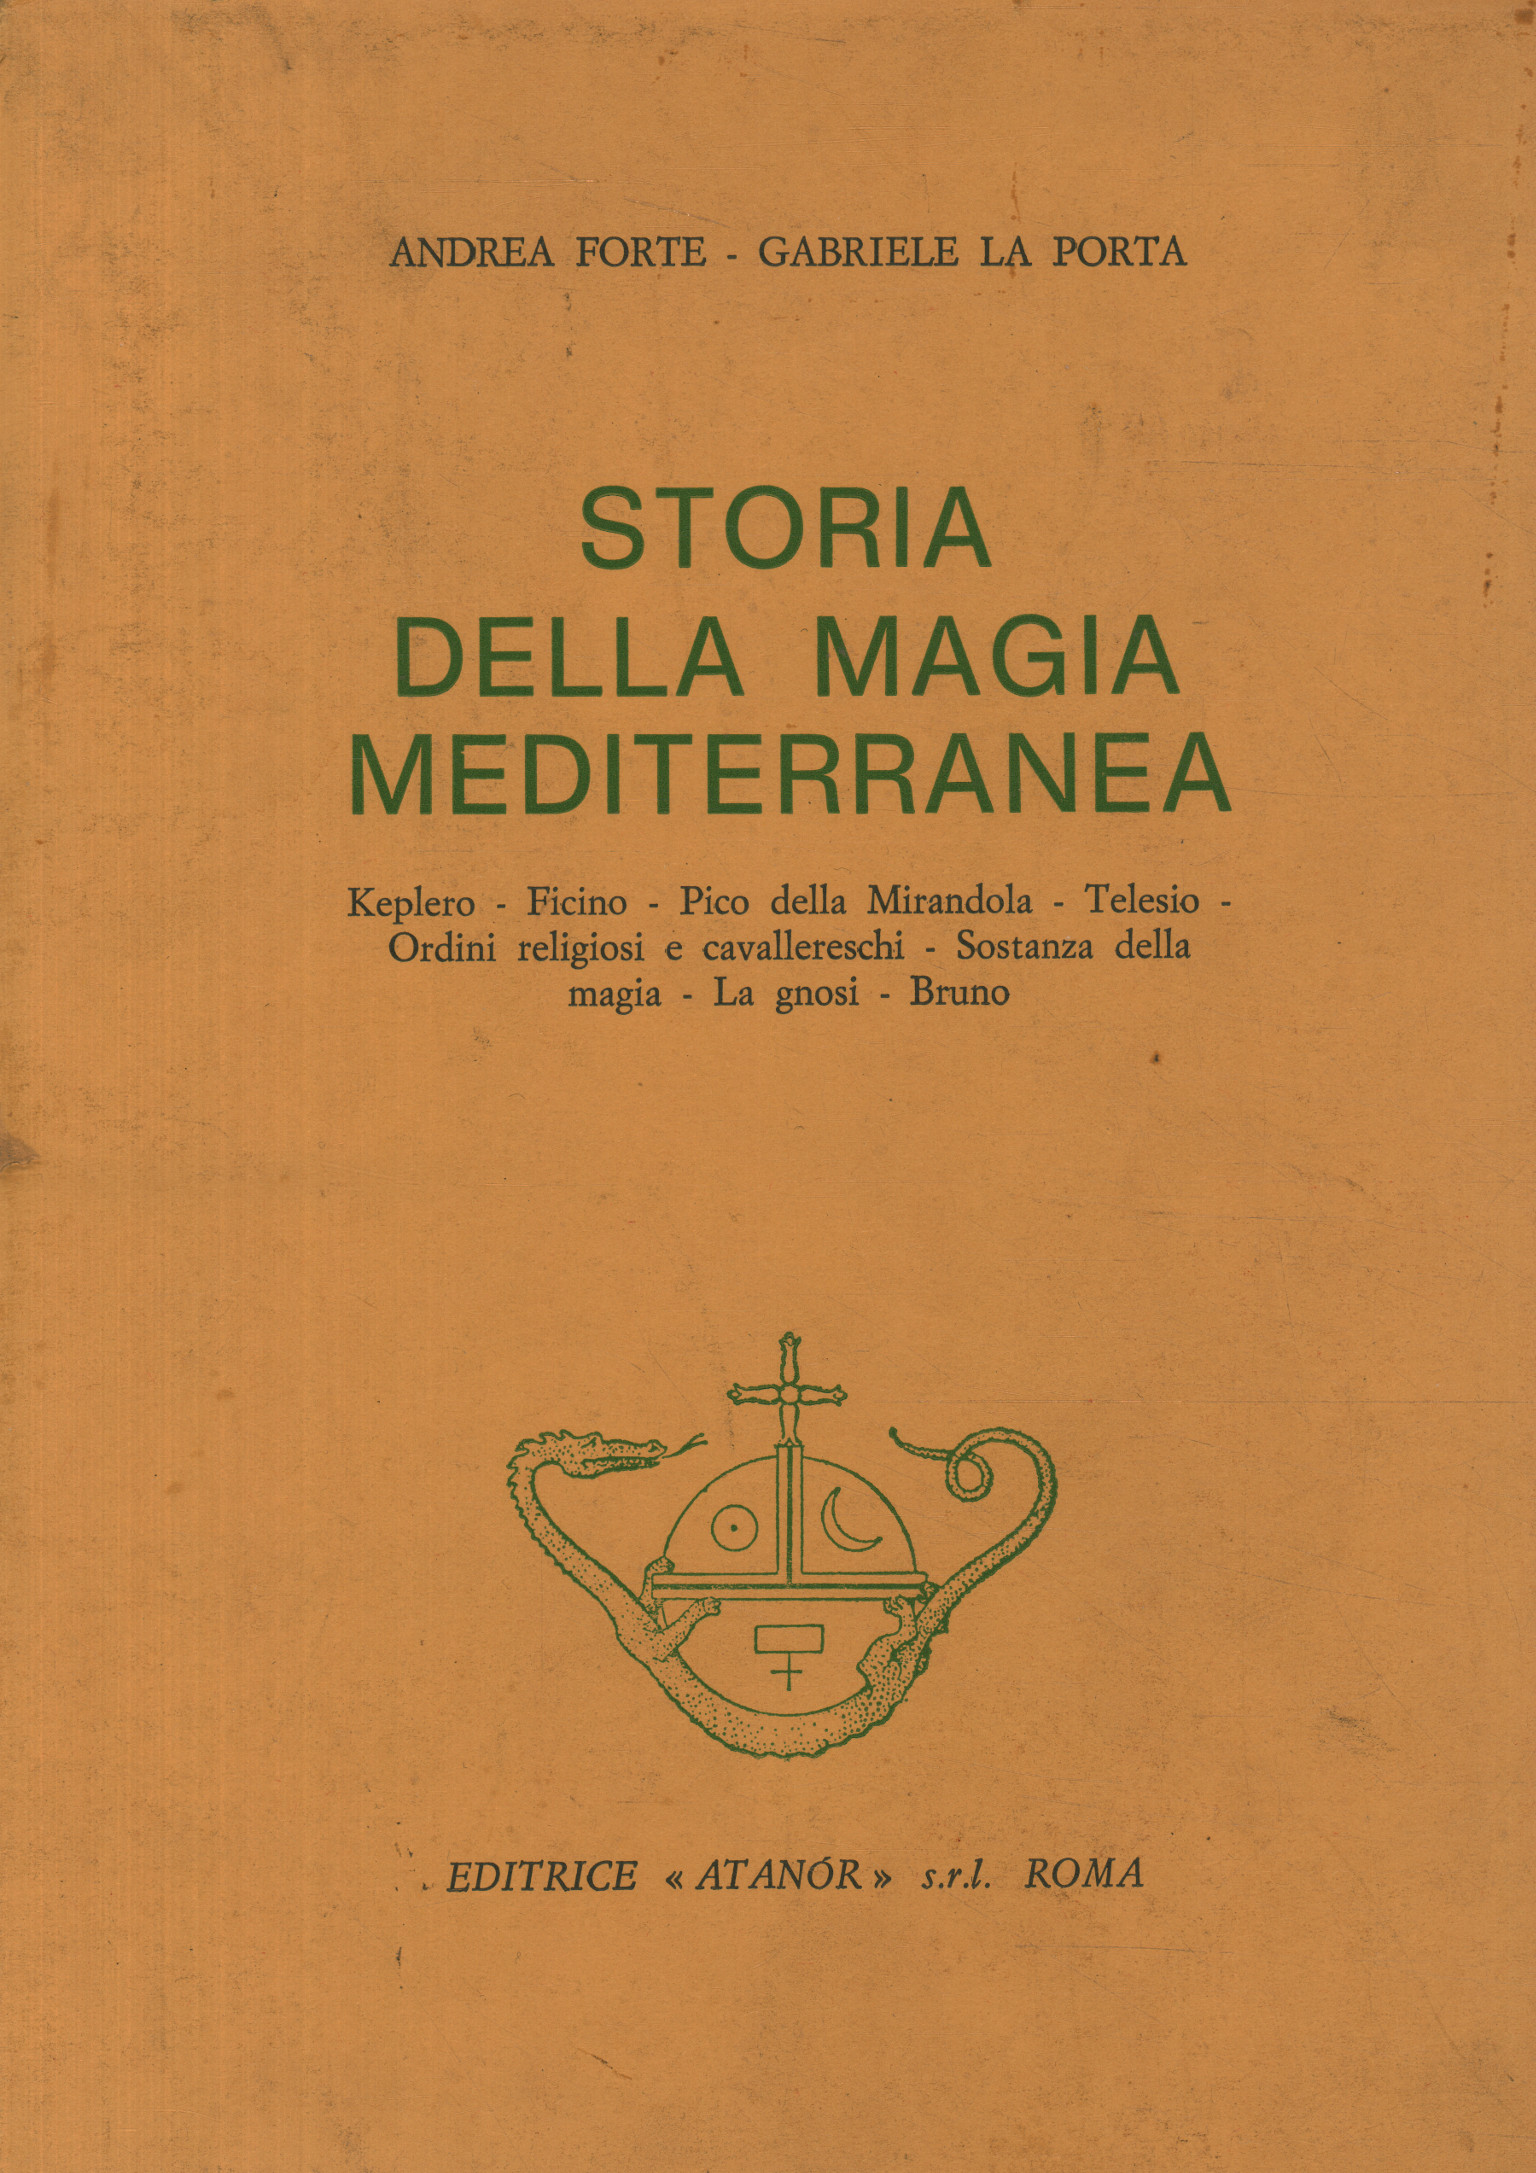 Geschichte der mediterranen Magie